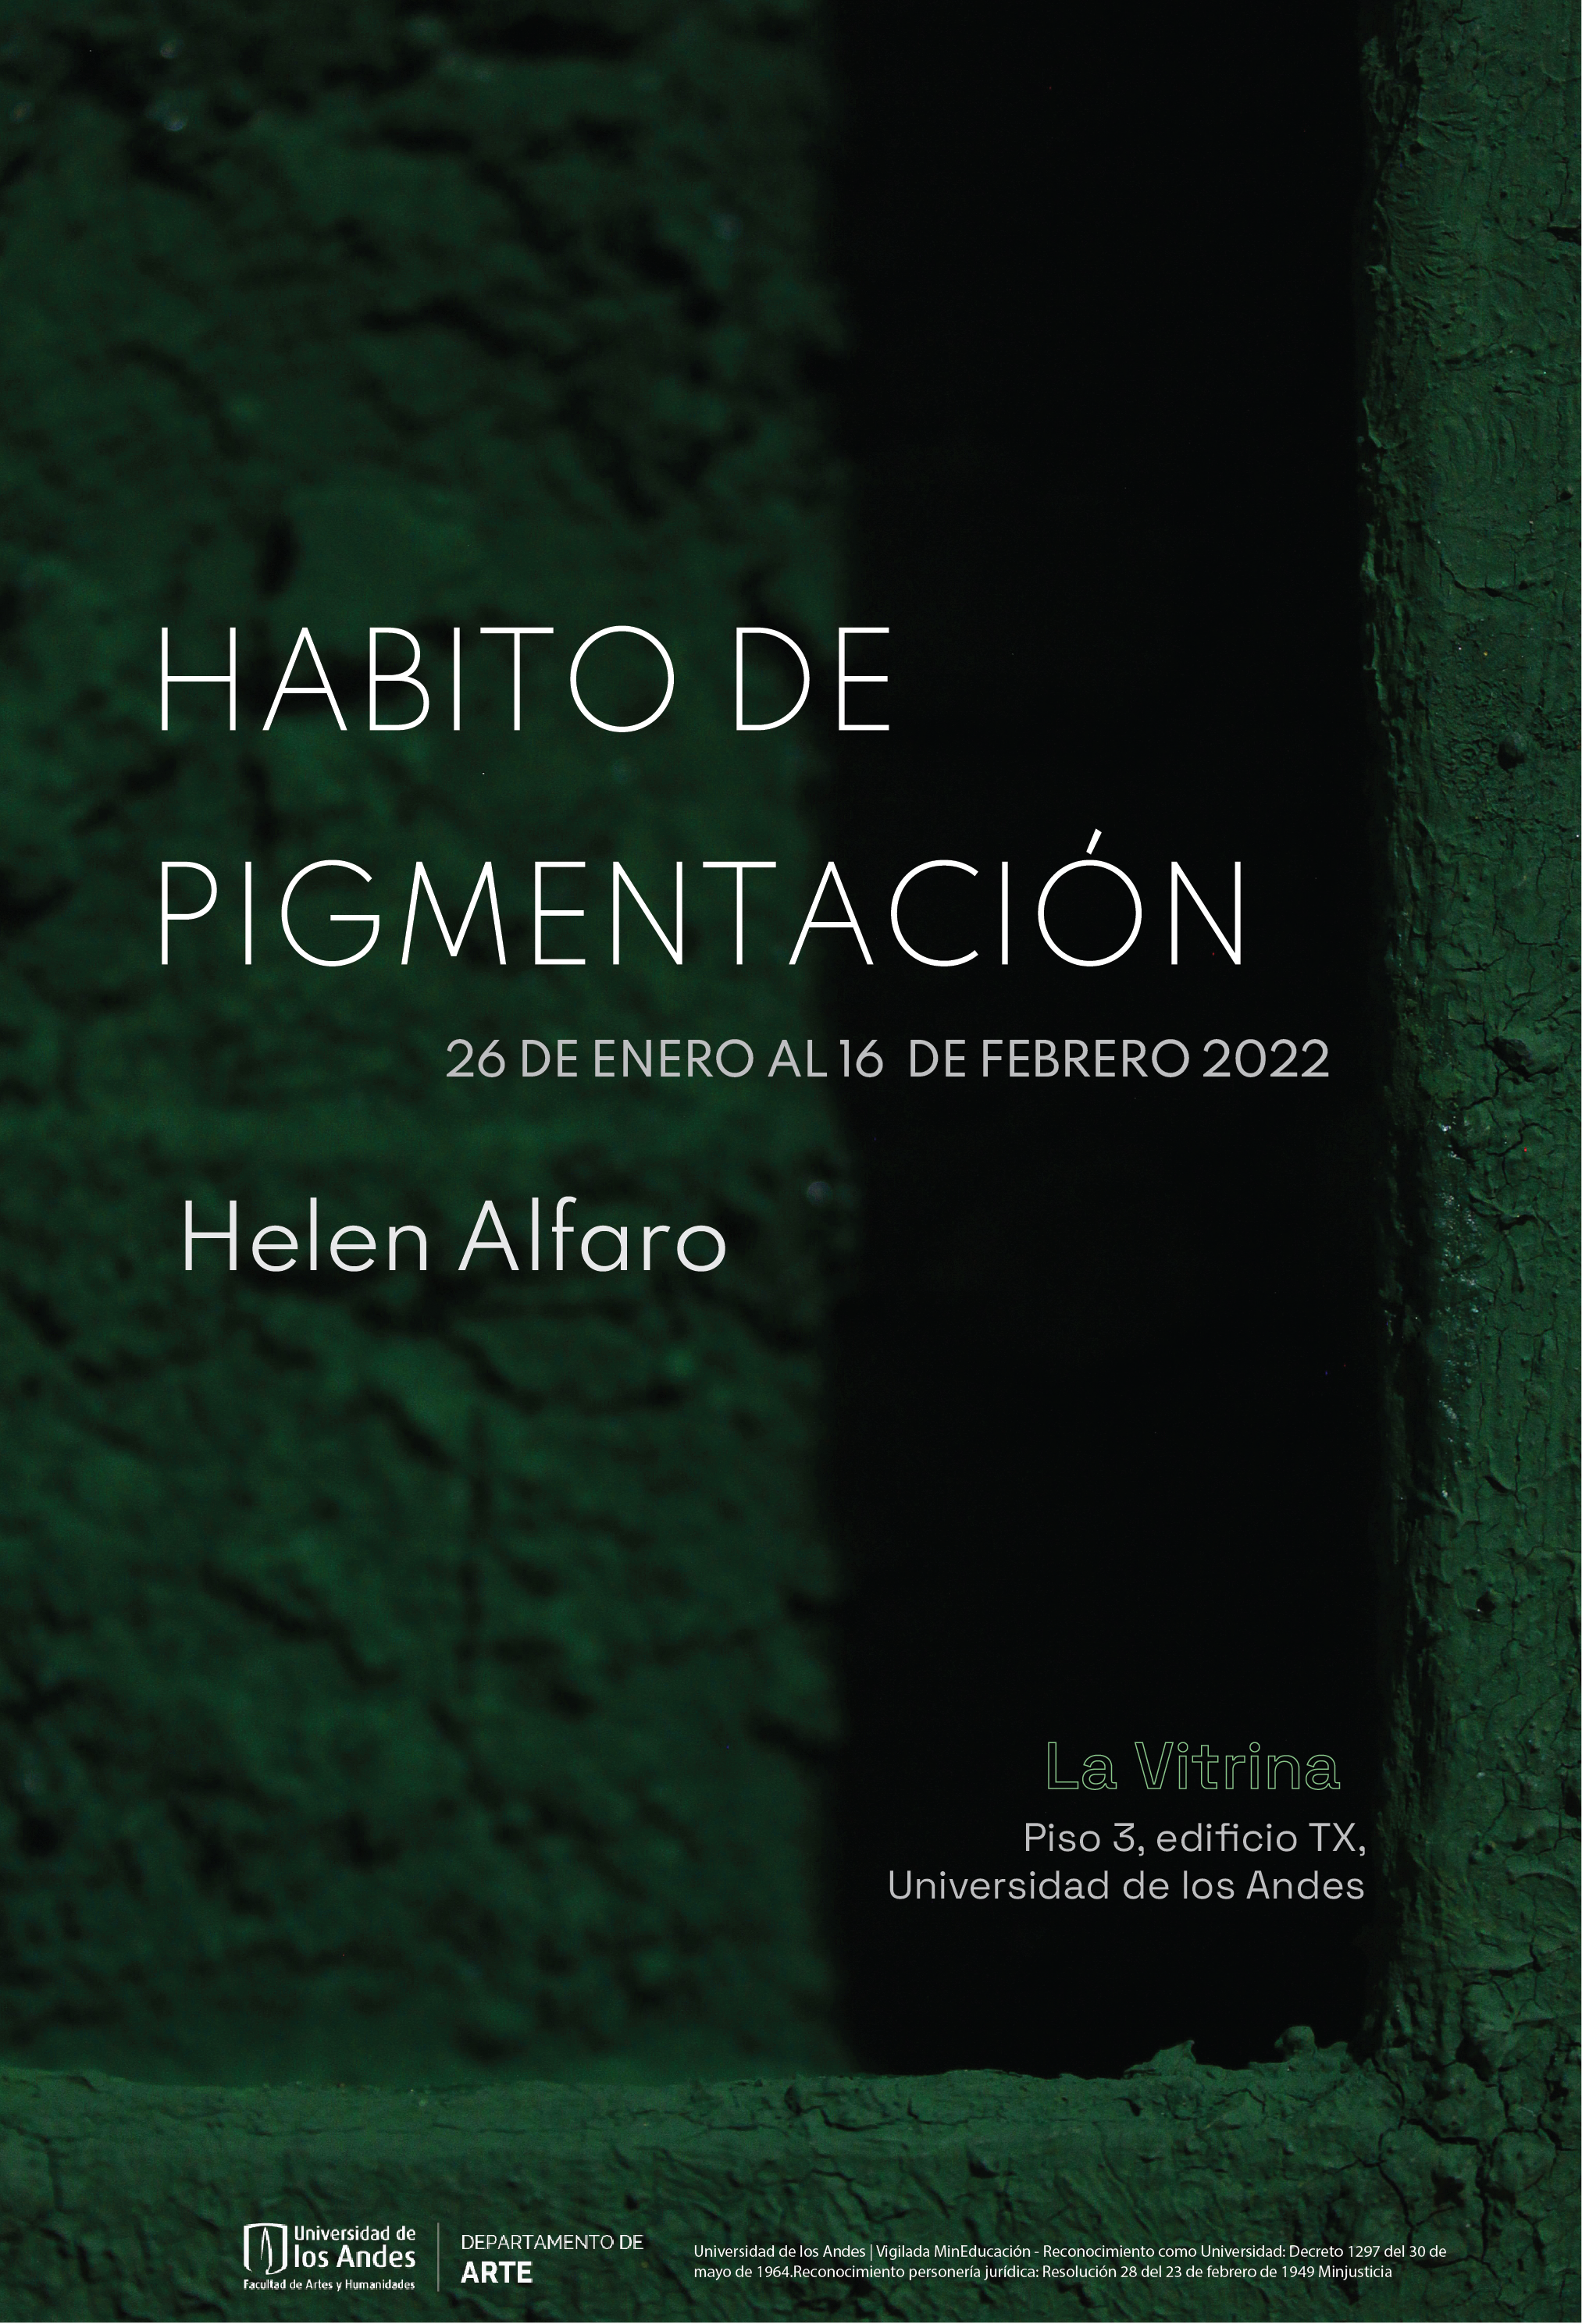 Helen Alfaro Habito de pigmentación